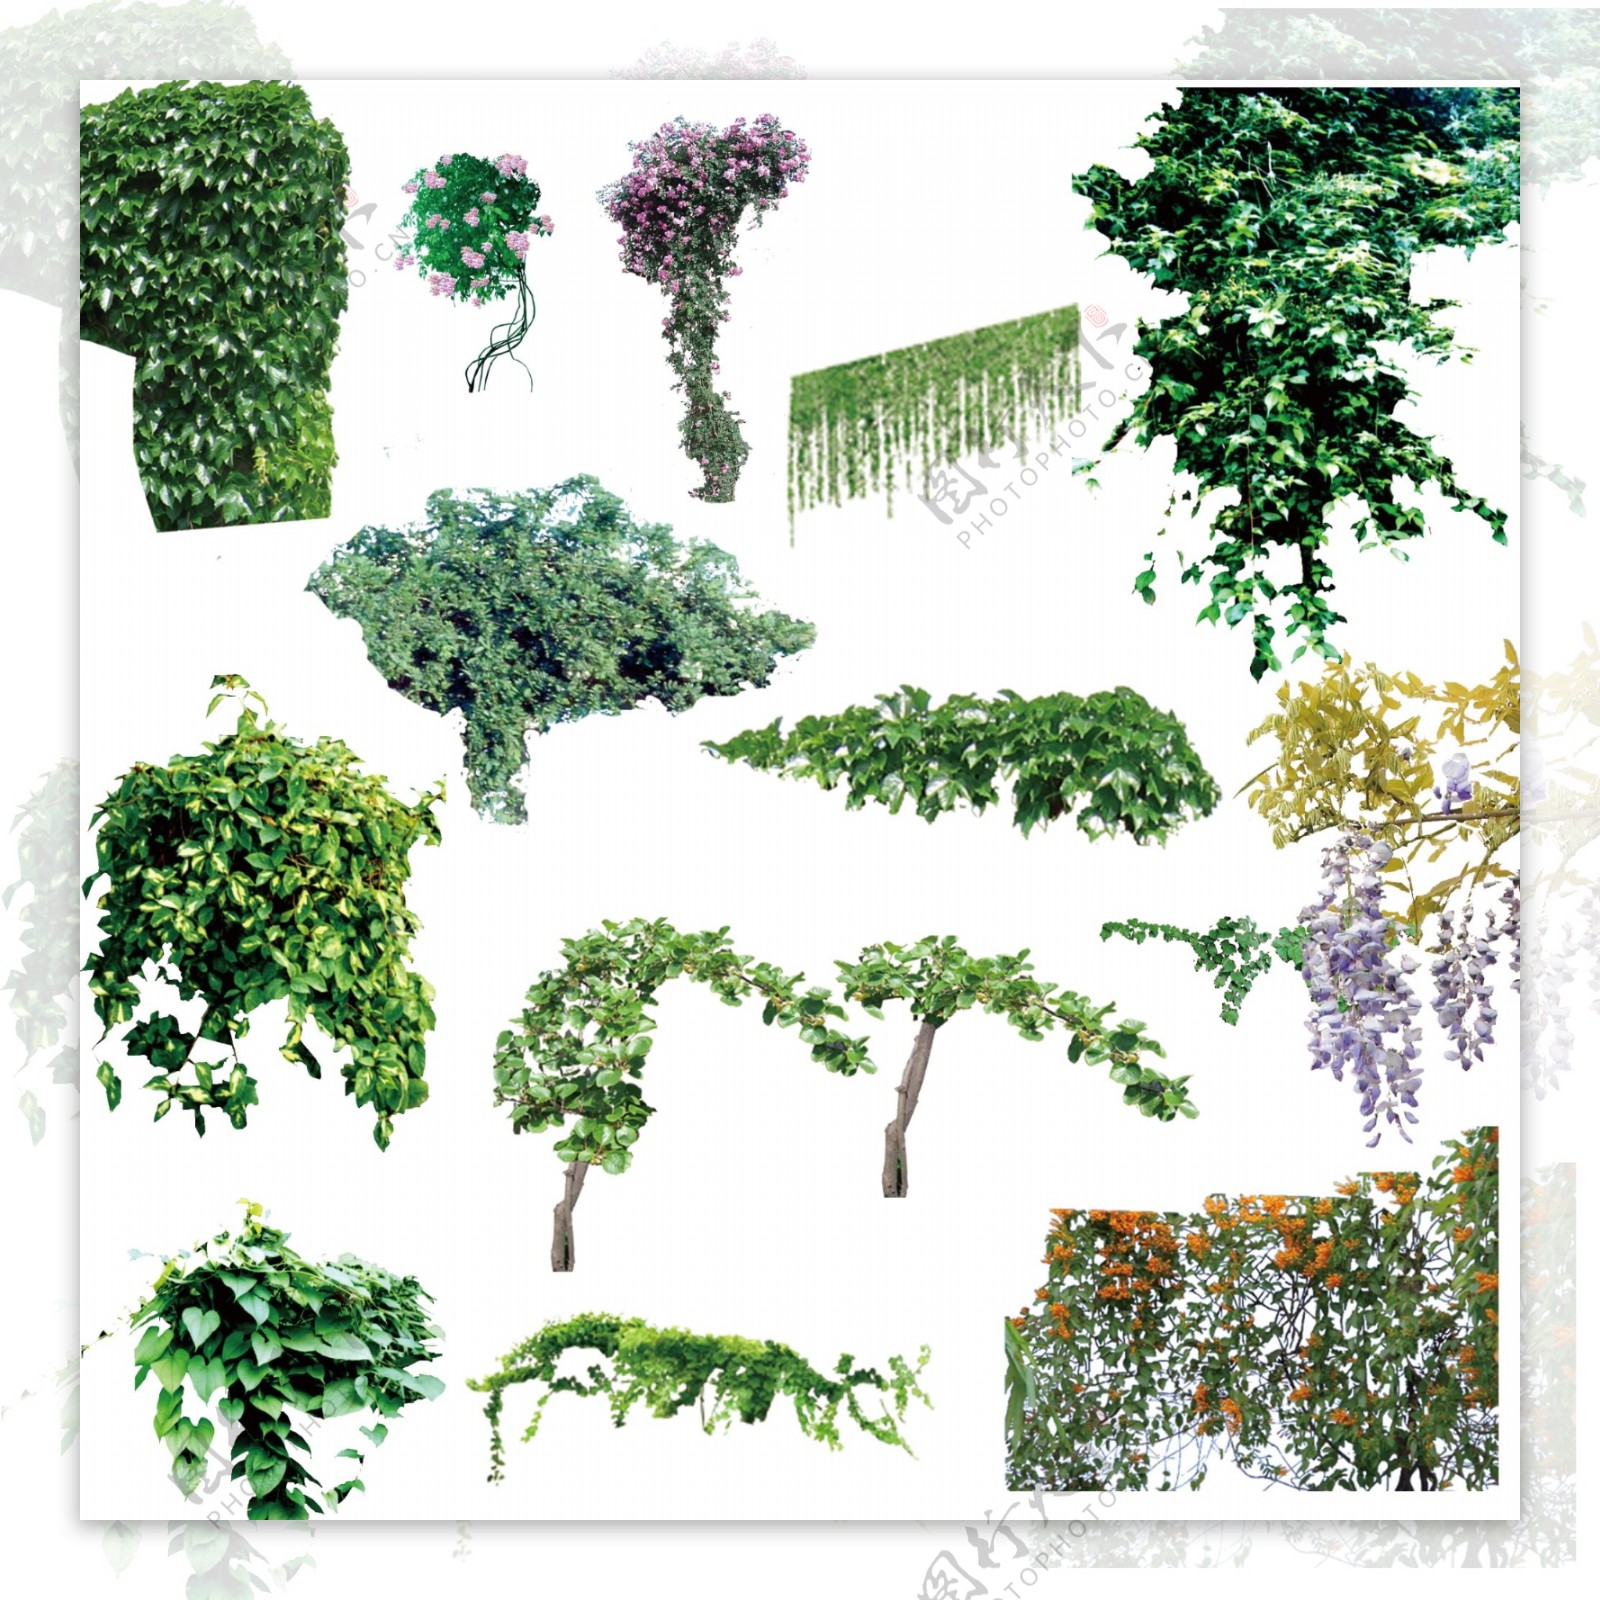 各类藤本植物图片